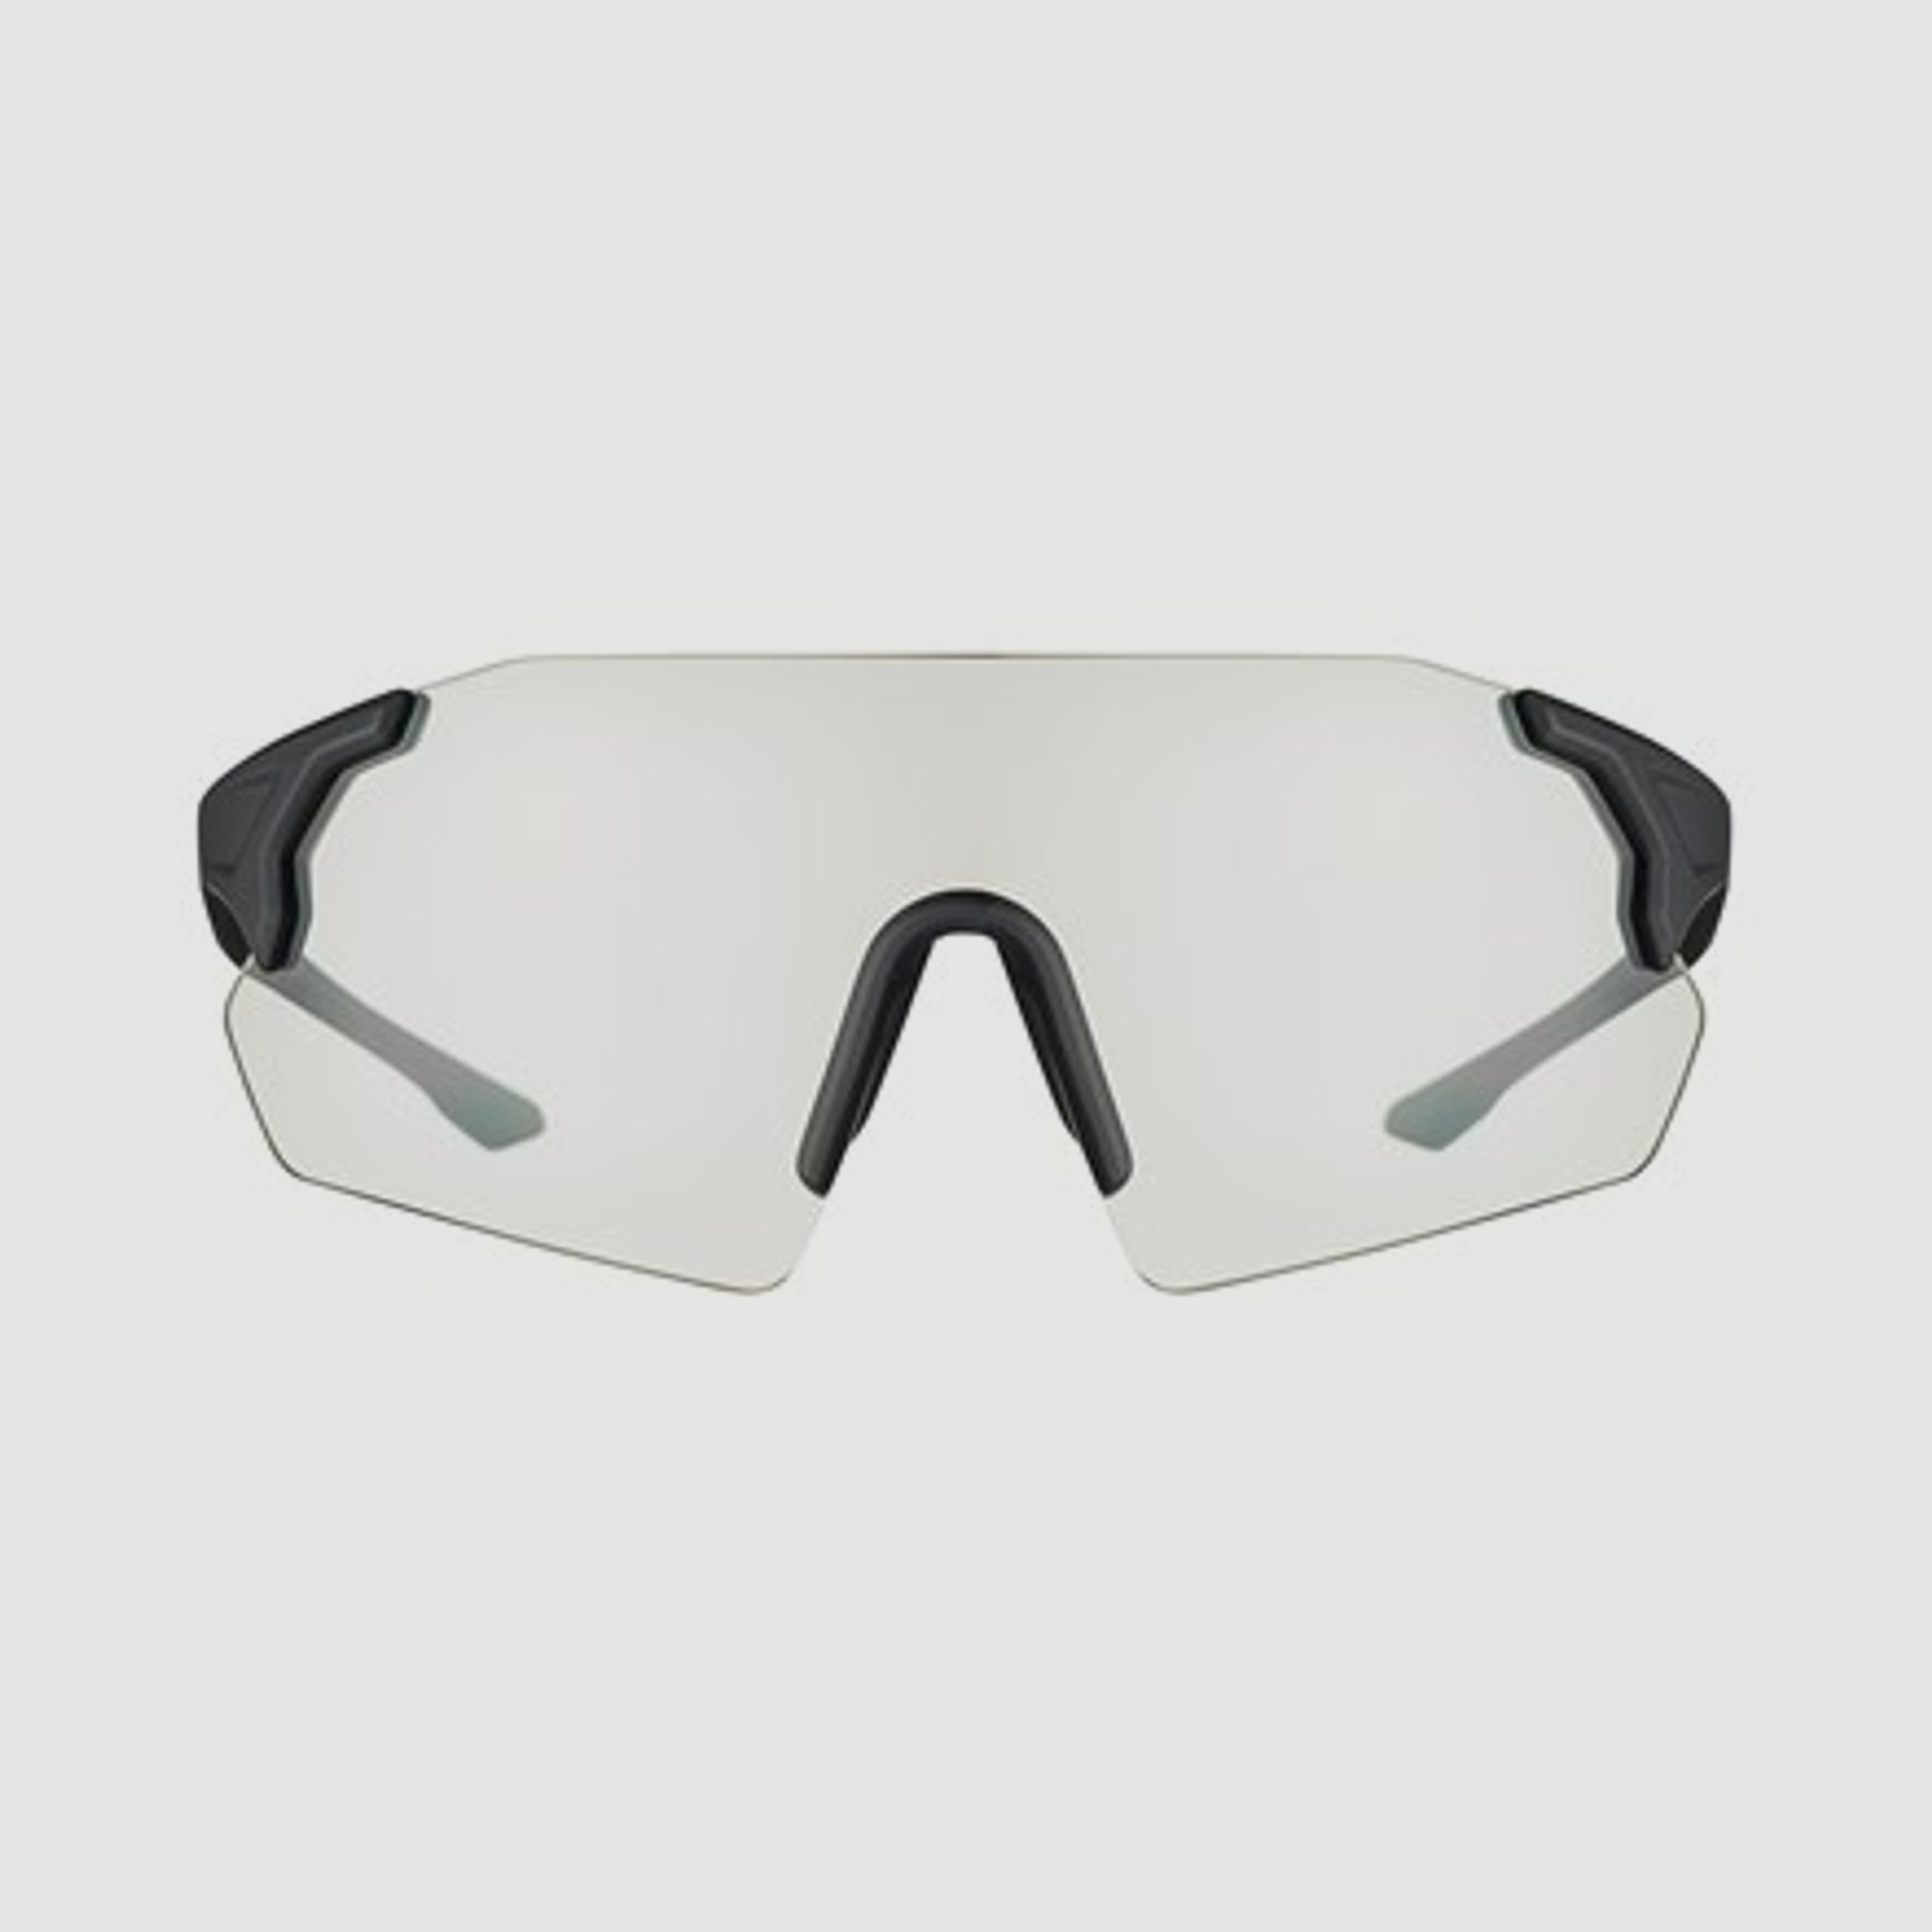 Beretta Schießbrille Challenge EVO neutral